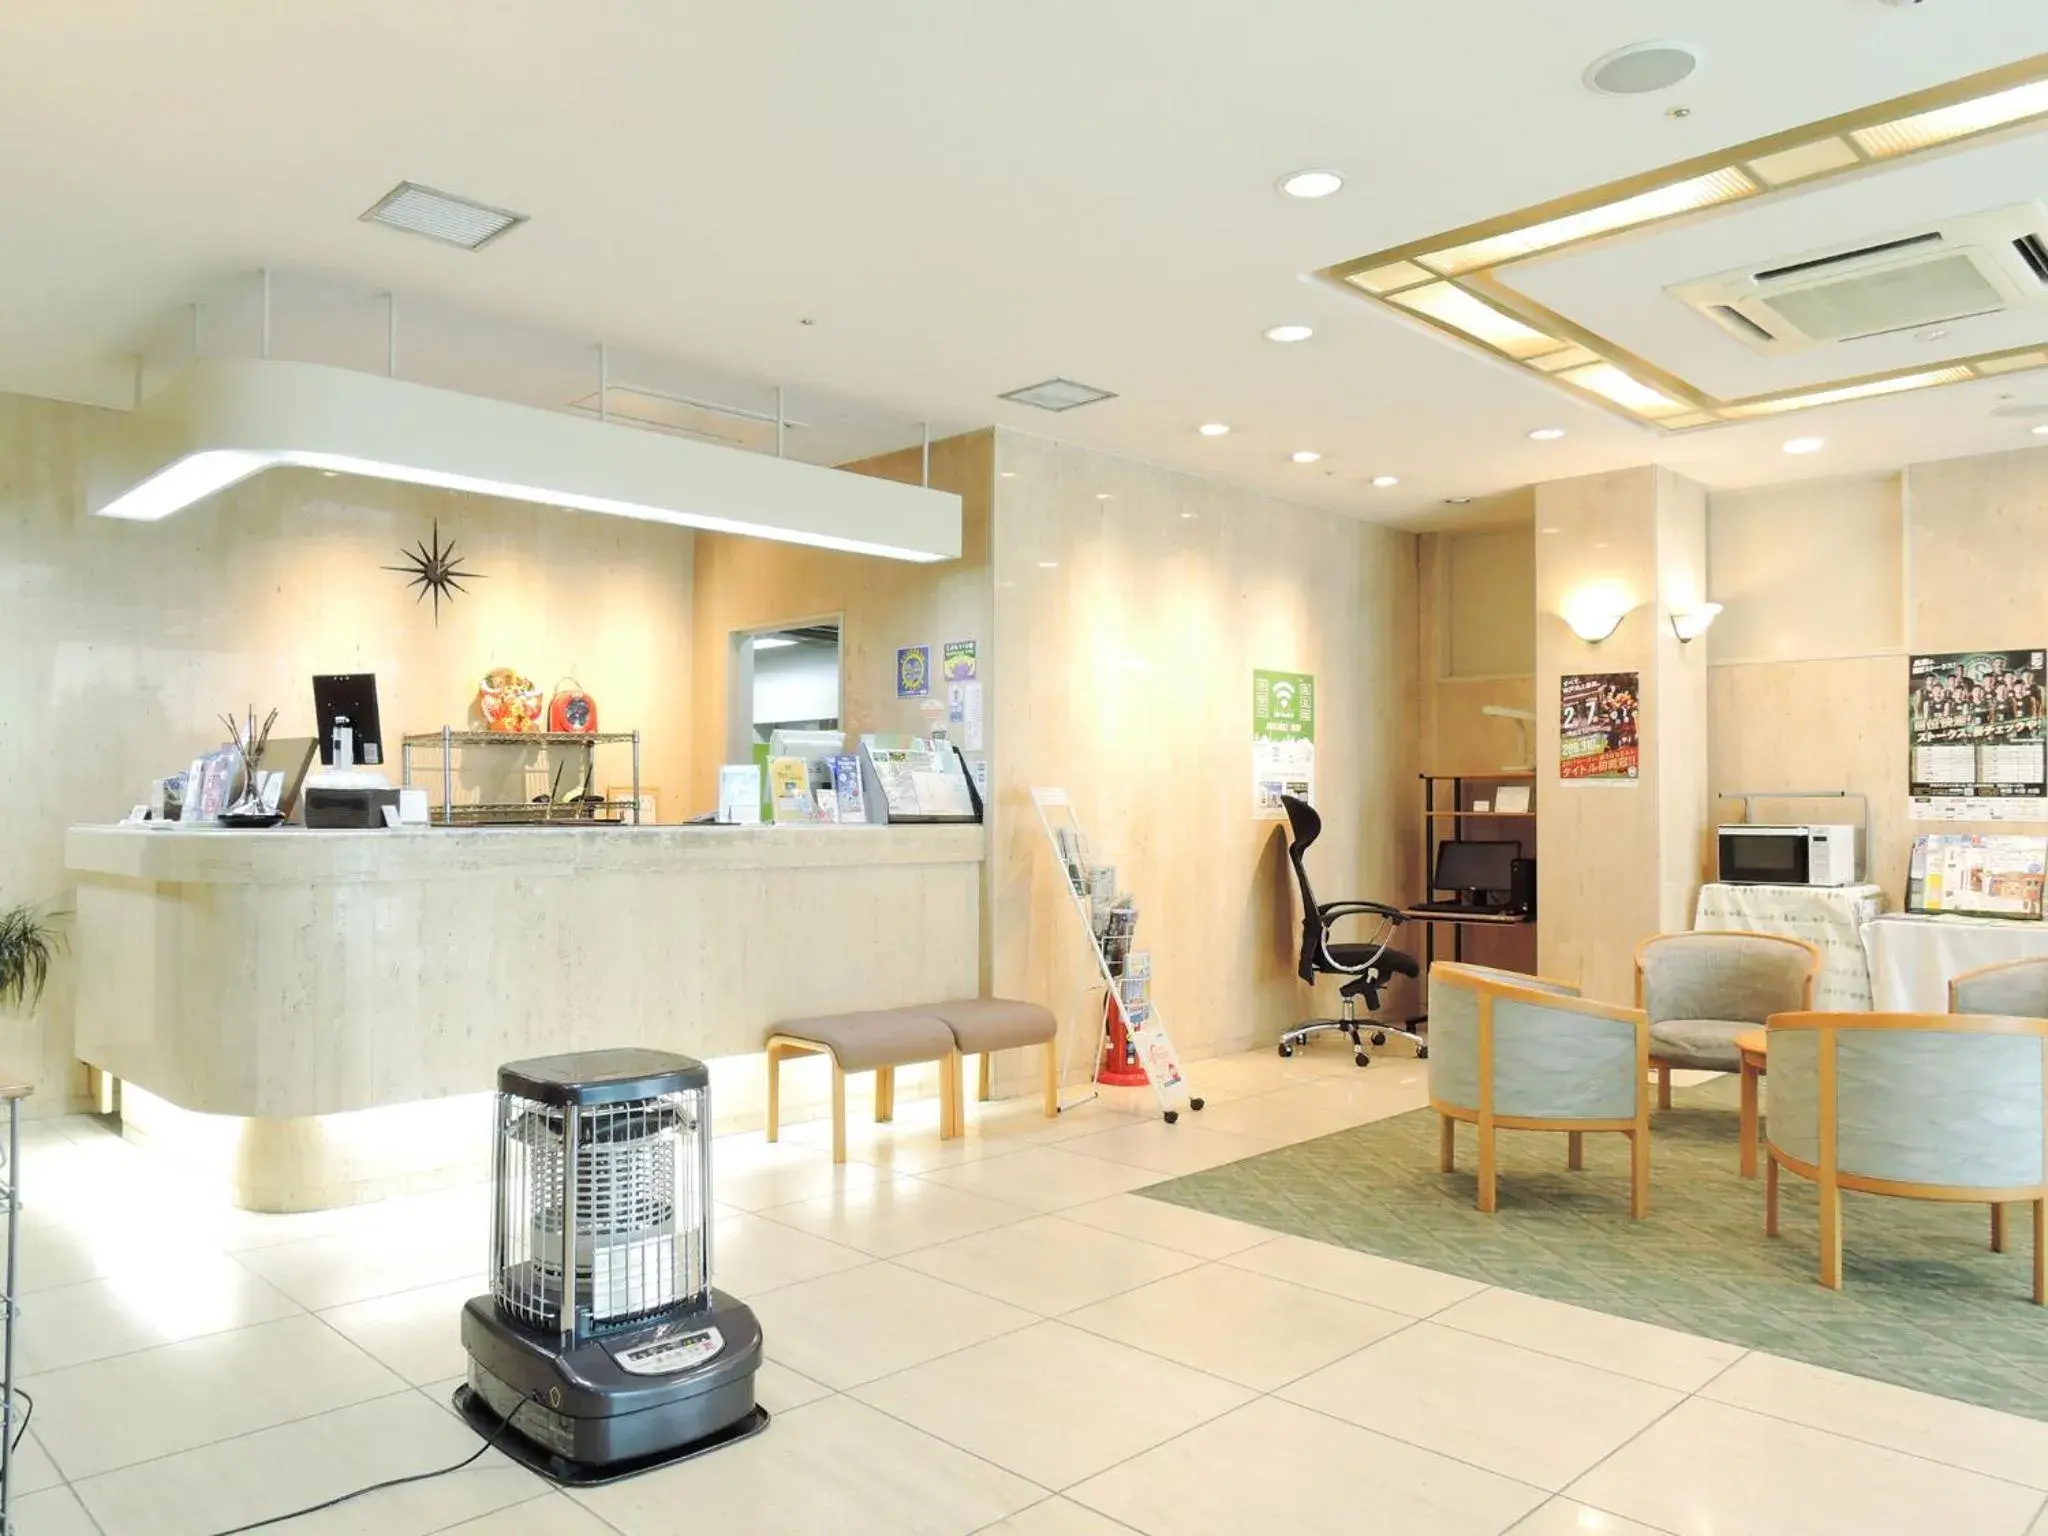 Area and facilities, Lobby/Reception in Kobe City Gardens Hotel